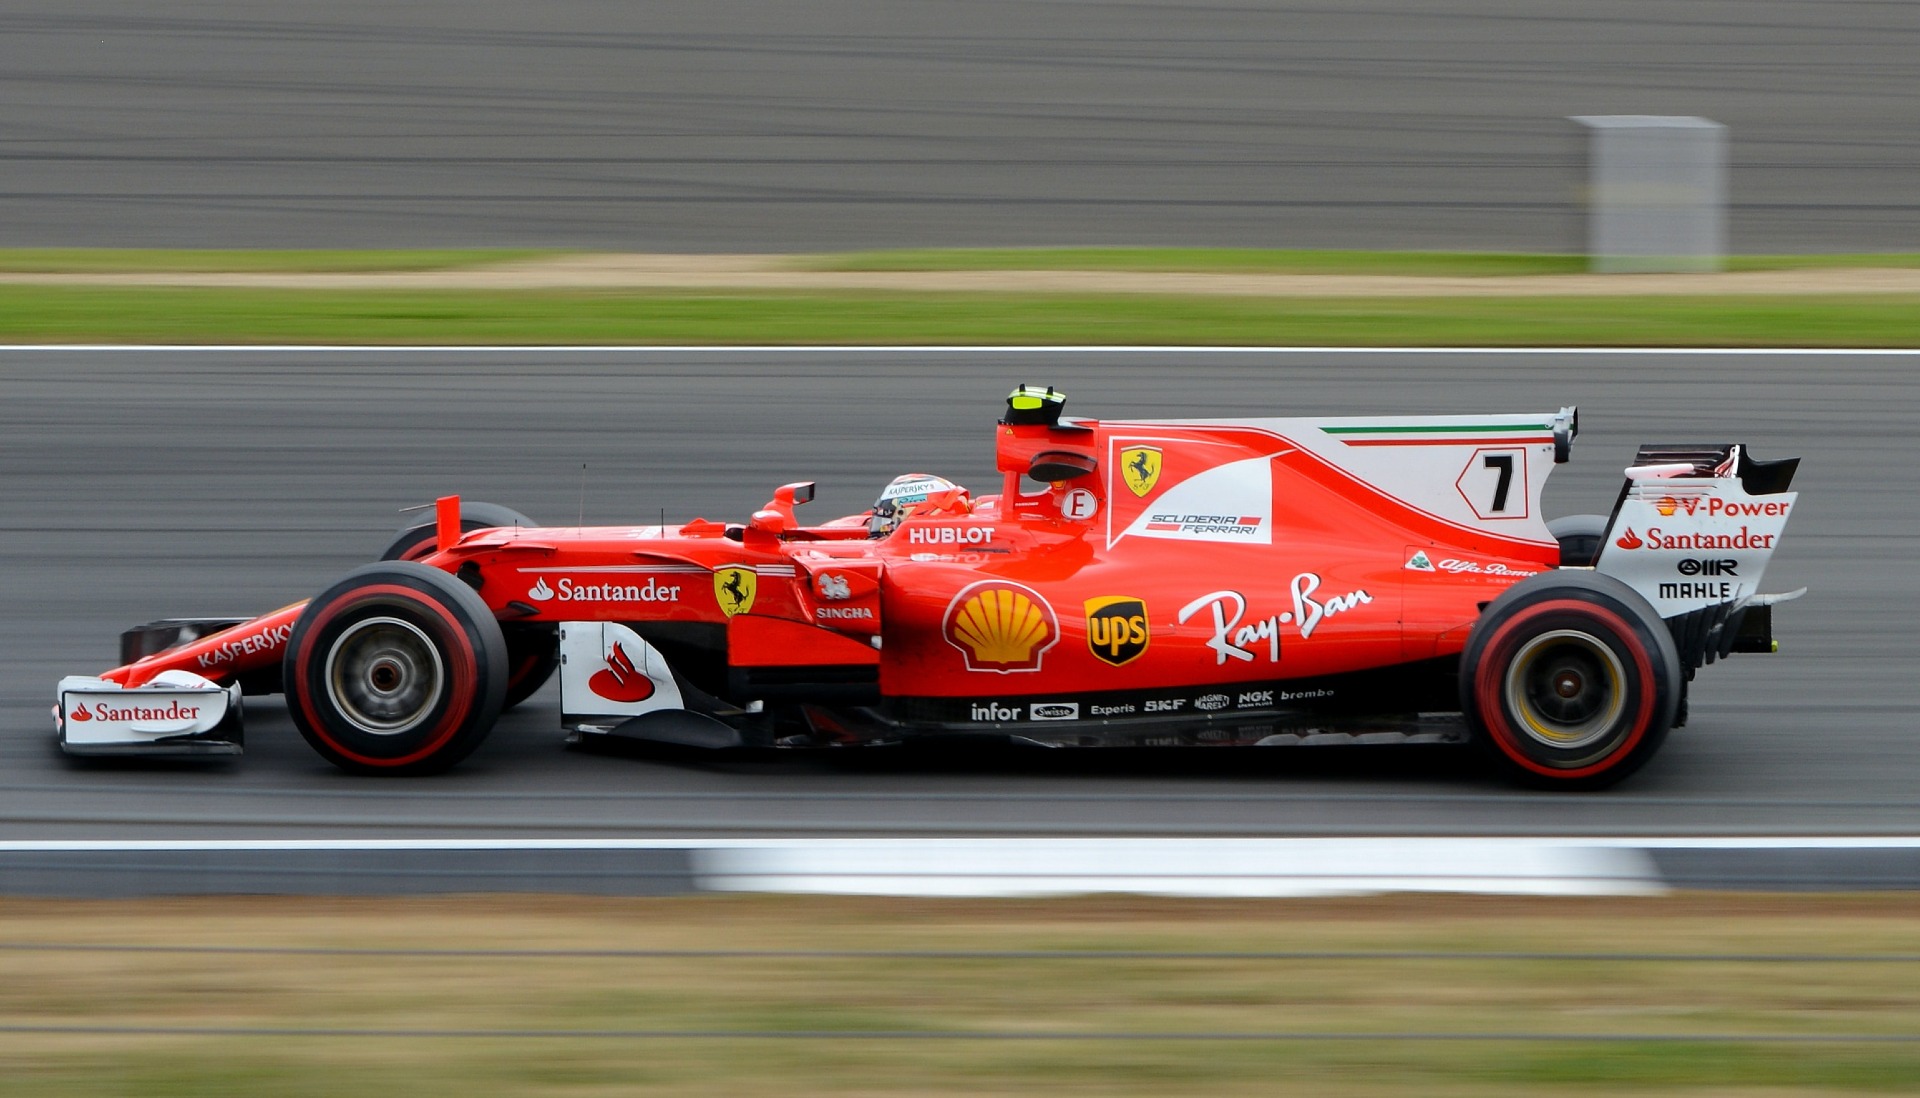 Apostas em F1 - Regras e Dicas Para Apostares no GP do Japão